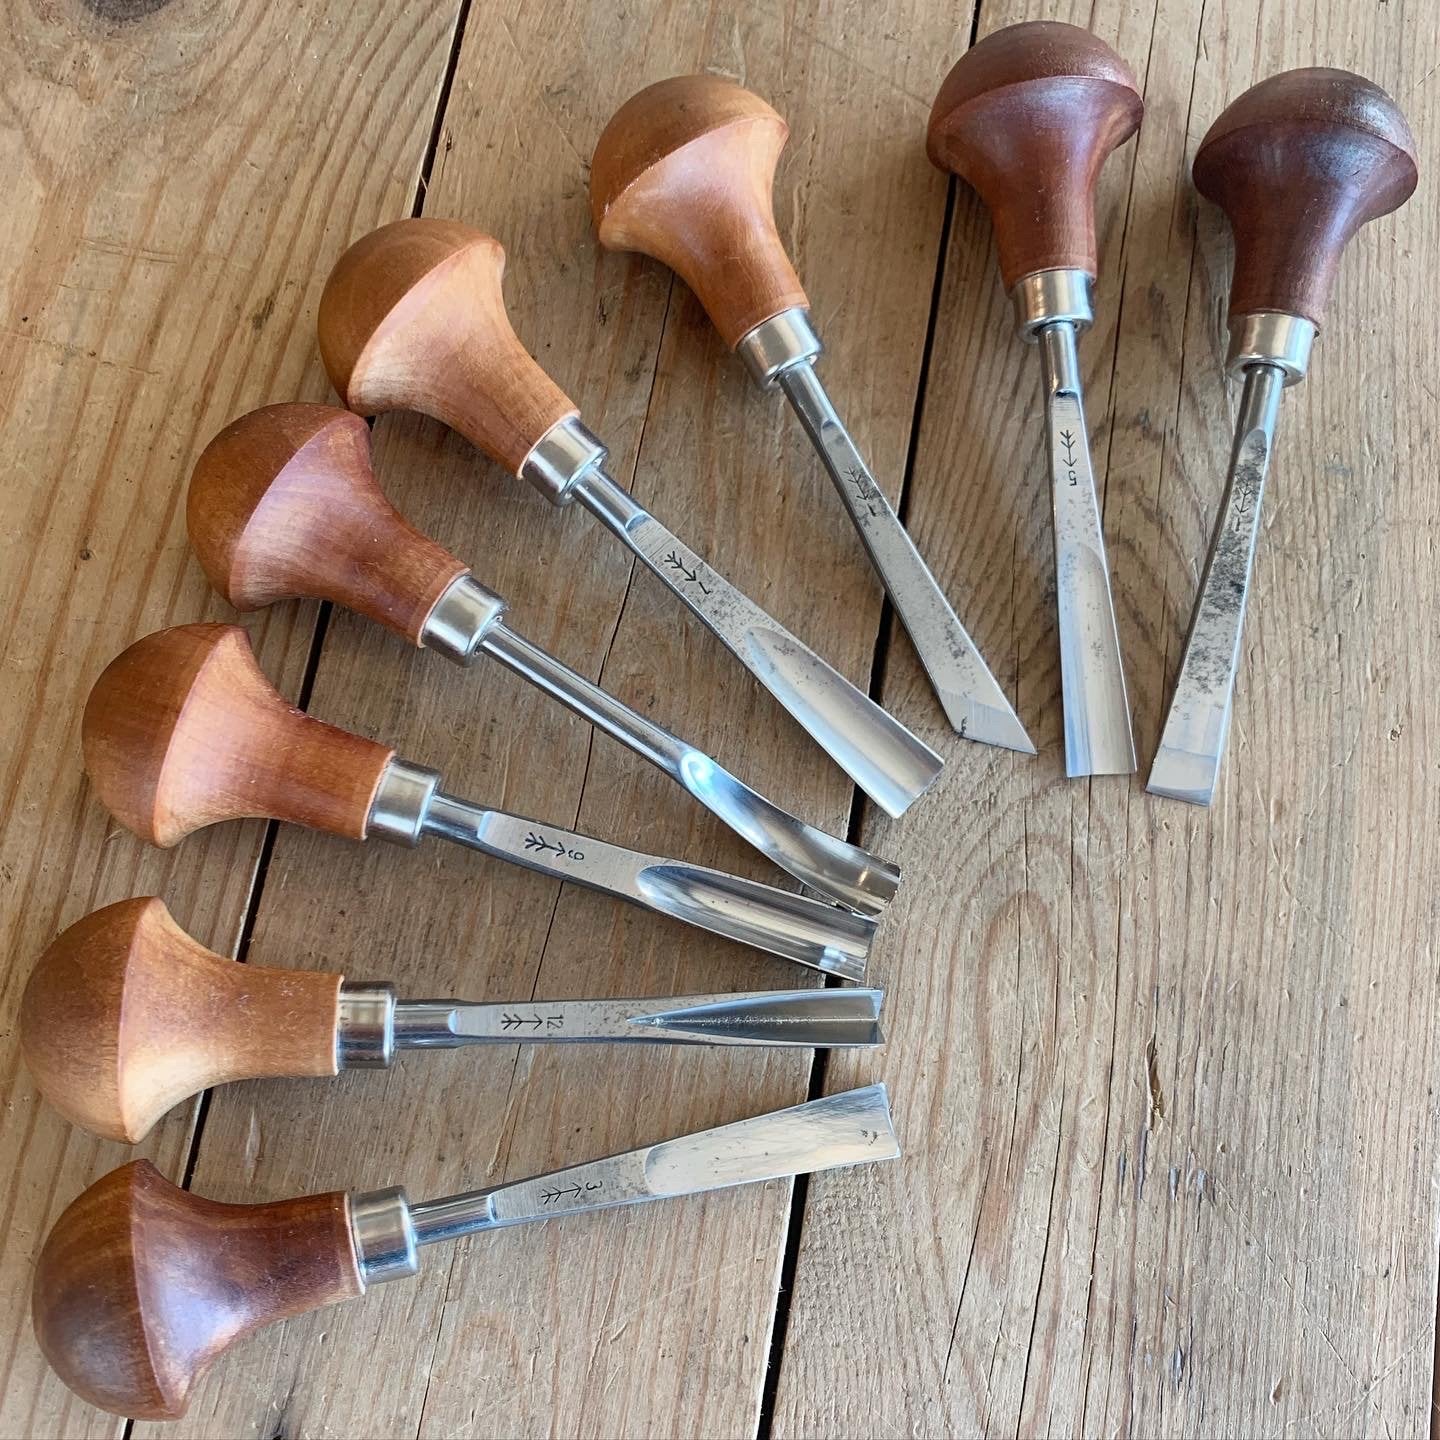 wood carving tools chisels gouges mora carving knife knives hook knife spoon bowl making vintage antique hand tools